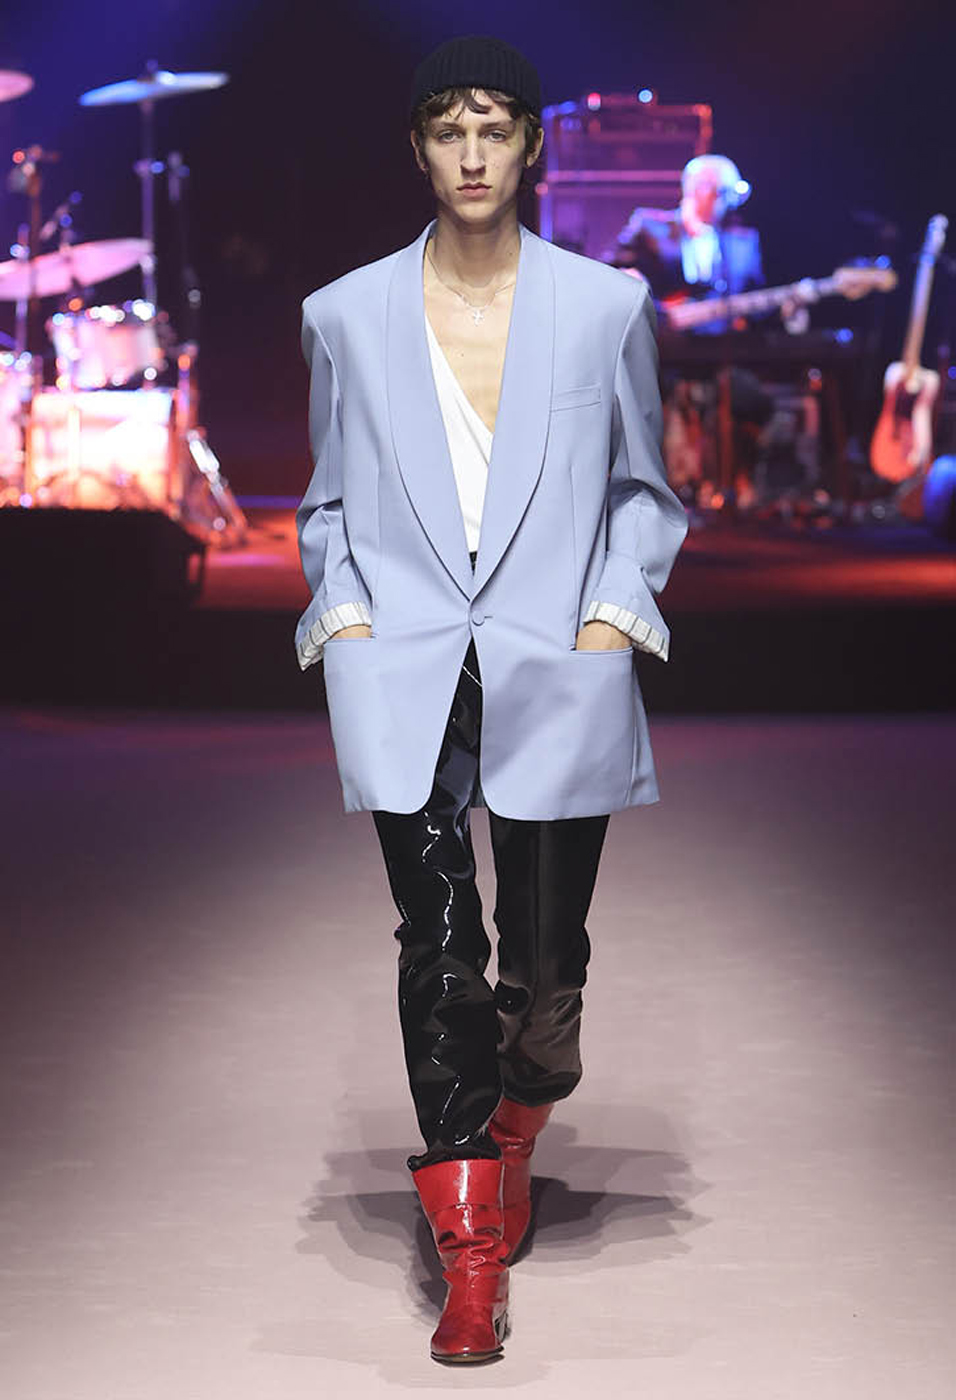 Alessandro Michele Subverts the Fashion Show With Gucci Dallas Space -  Interior Design